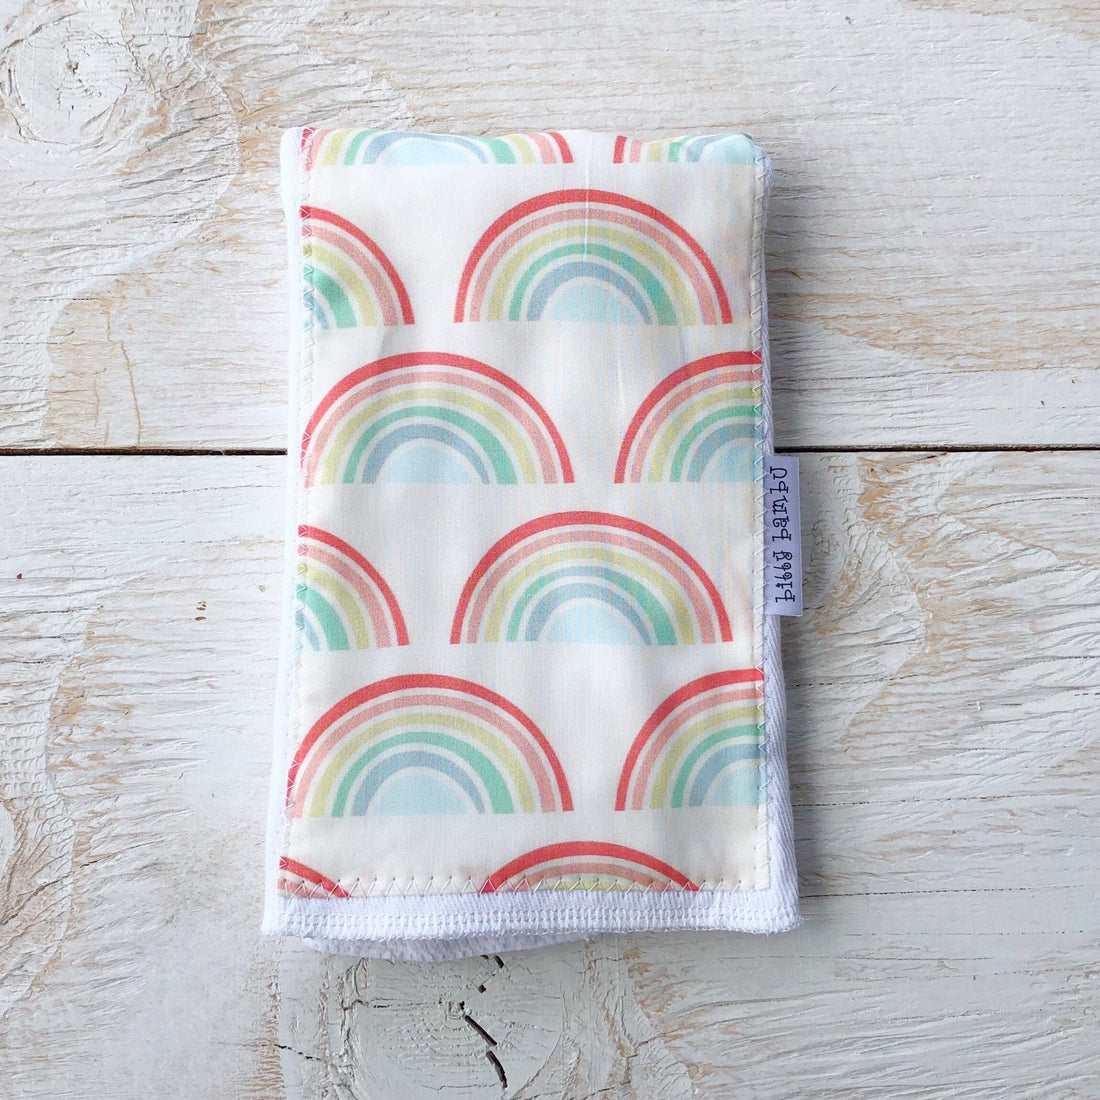 Rainbow Baby Burp Cloth - Hawaii Made Baby Gift - Newborn Gift Idea - Made in Maui, Hawaii